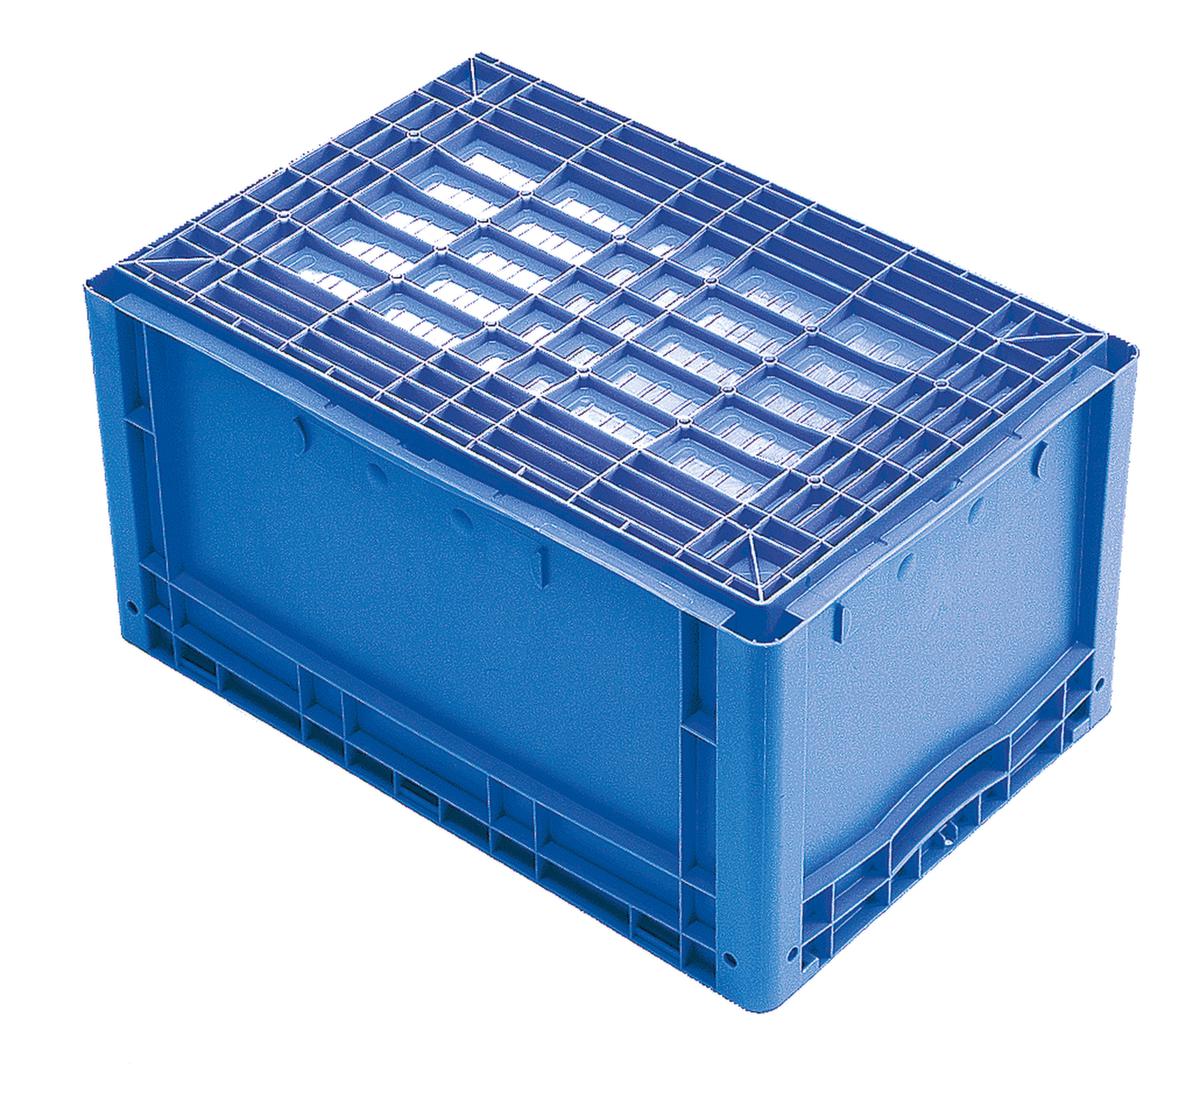 Euronorm stapelcontainers met geribbelde bodem, blauw, inhoud 79 l  ZOOM